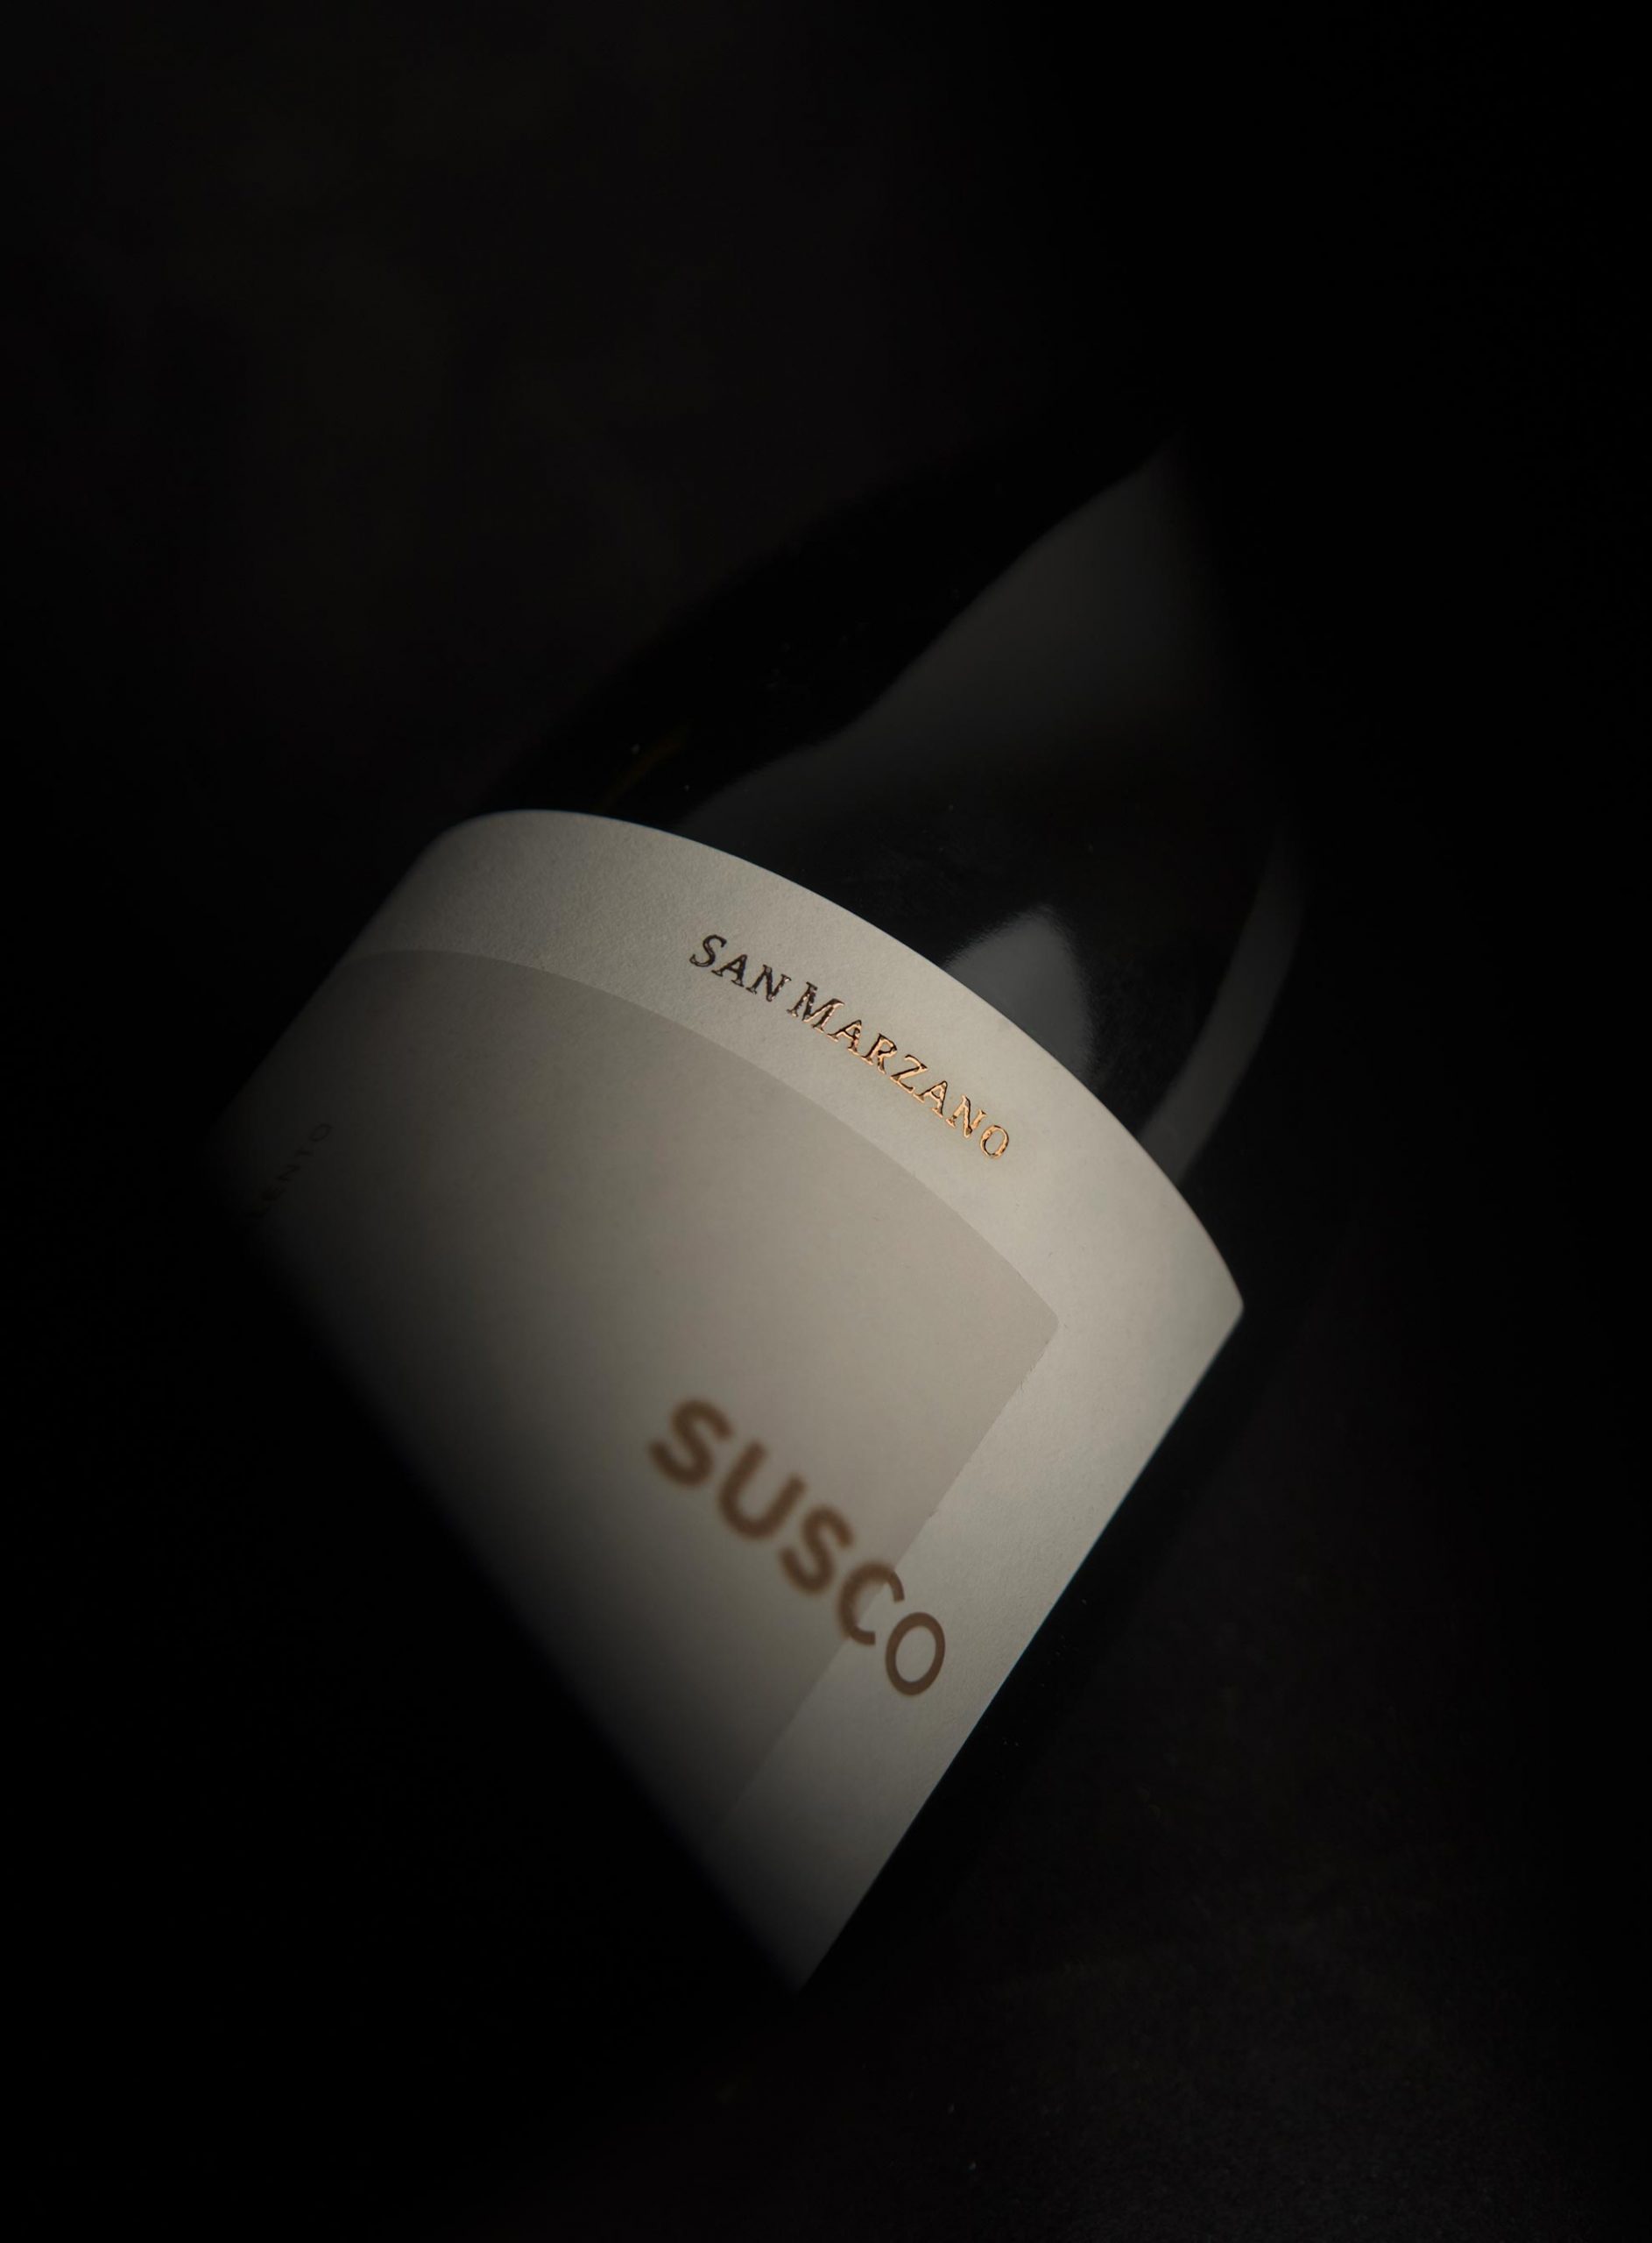 Susco wine